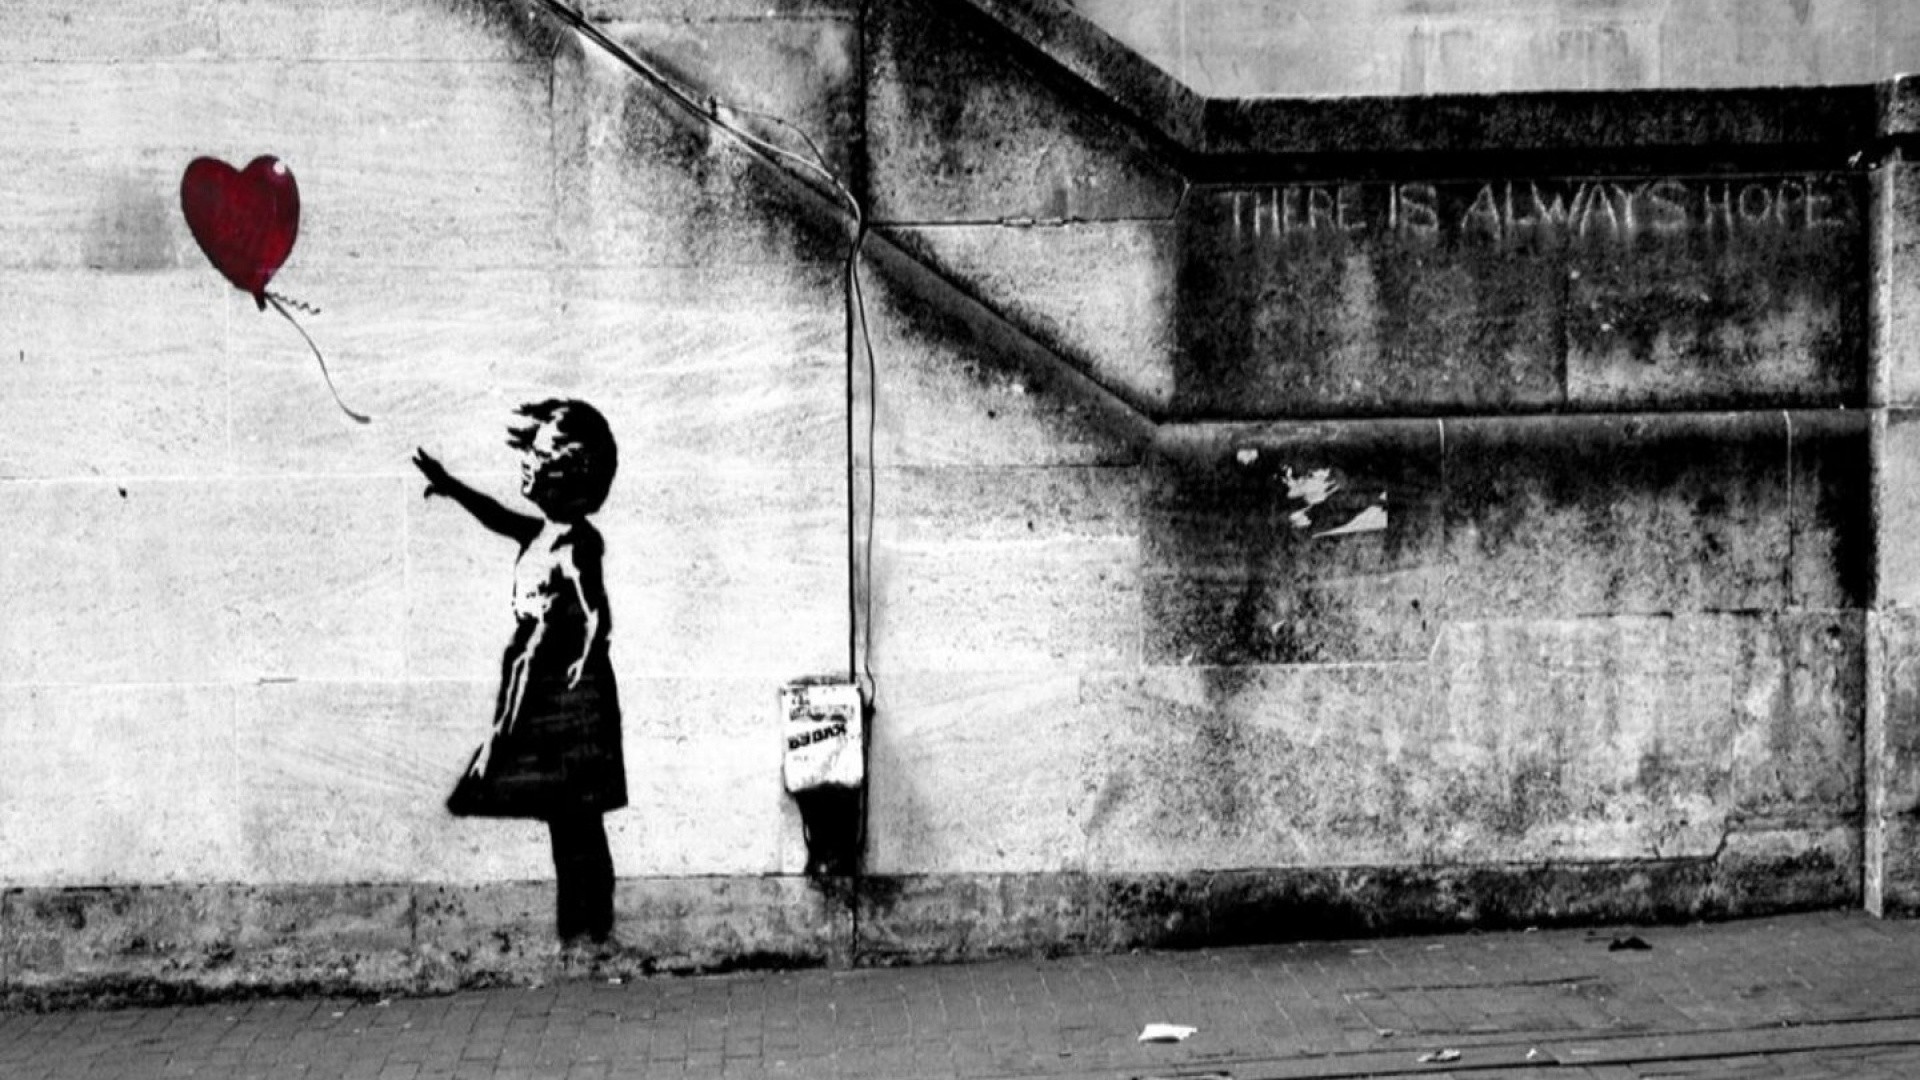 1920x1080 Banksy There Is Always Hope, Banksy, Street Art, Streetart, Graffit, Little